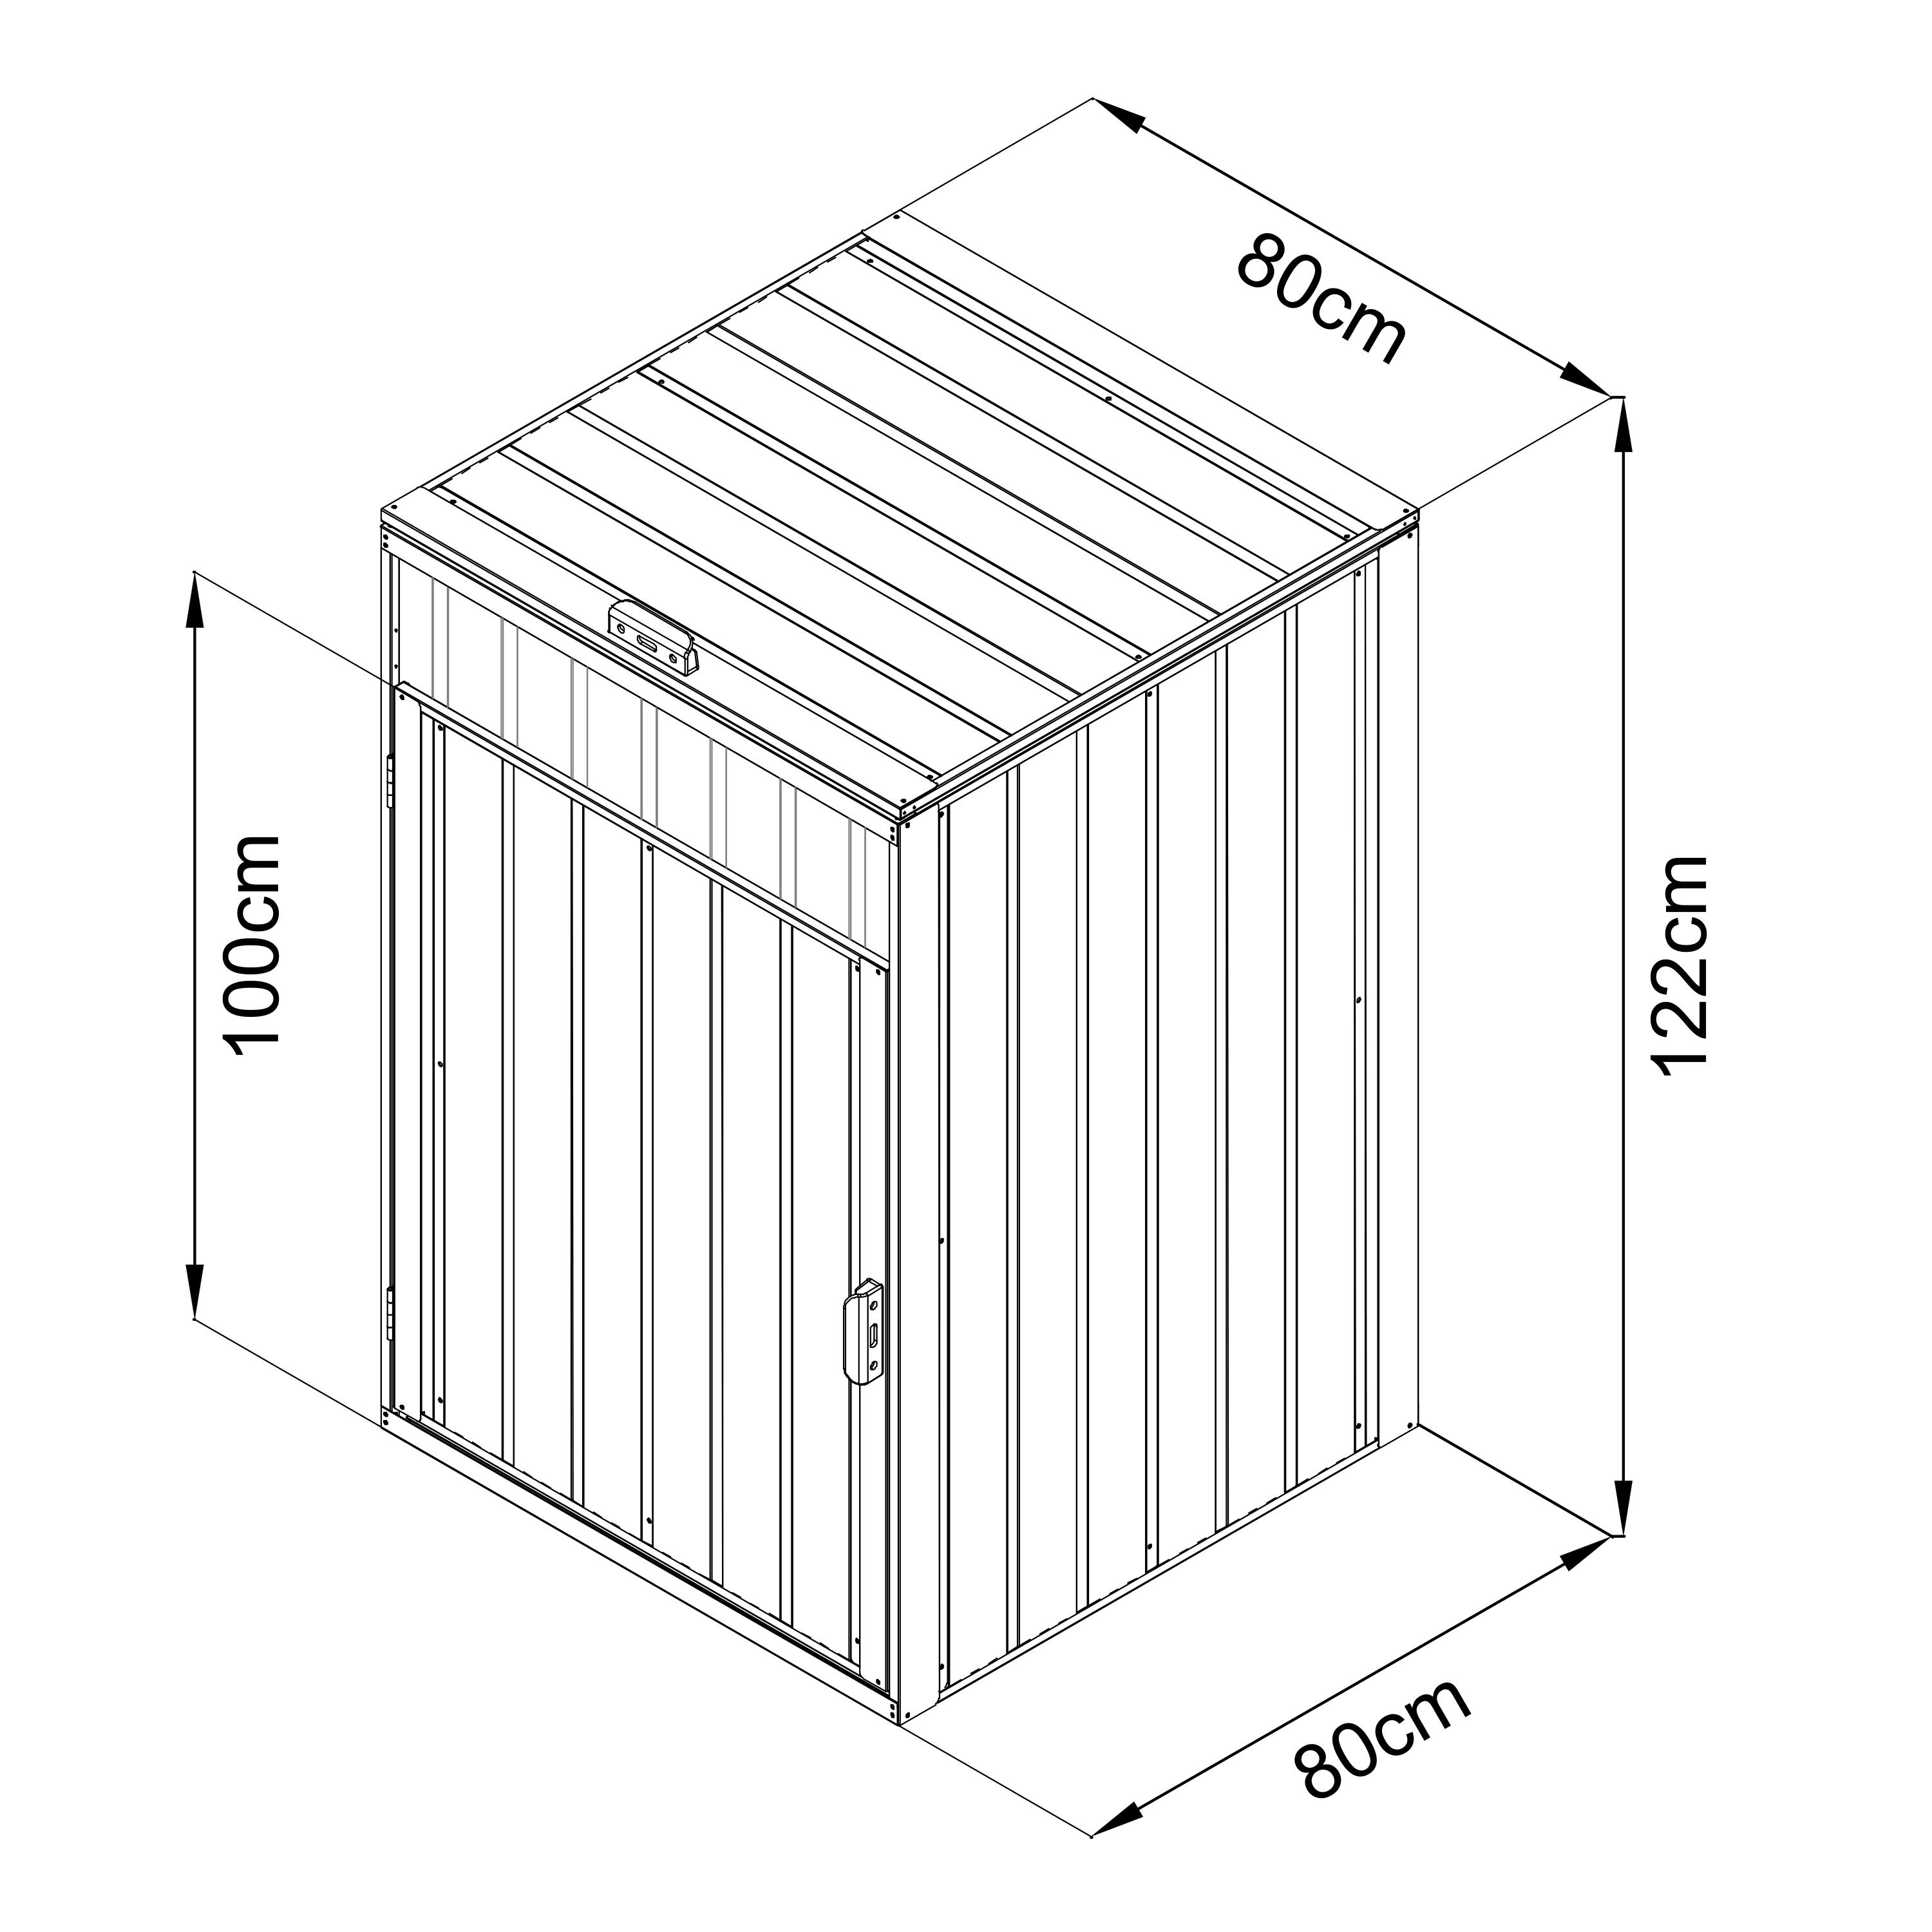 AXI Owen metalen Containerombouw Antraciet - 1 container